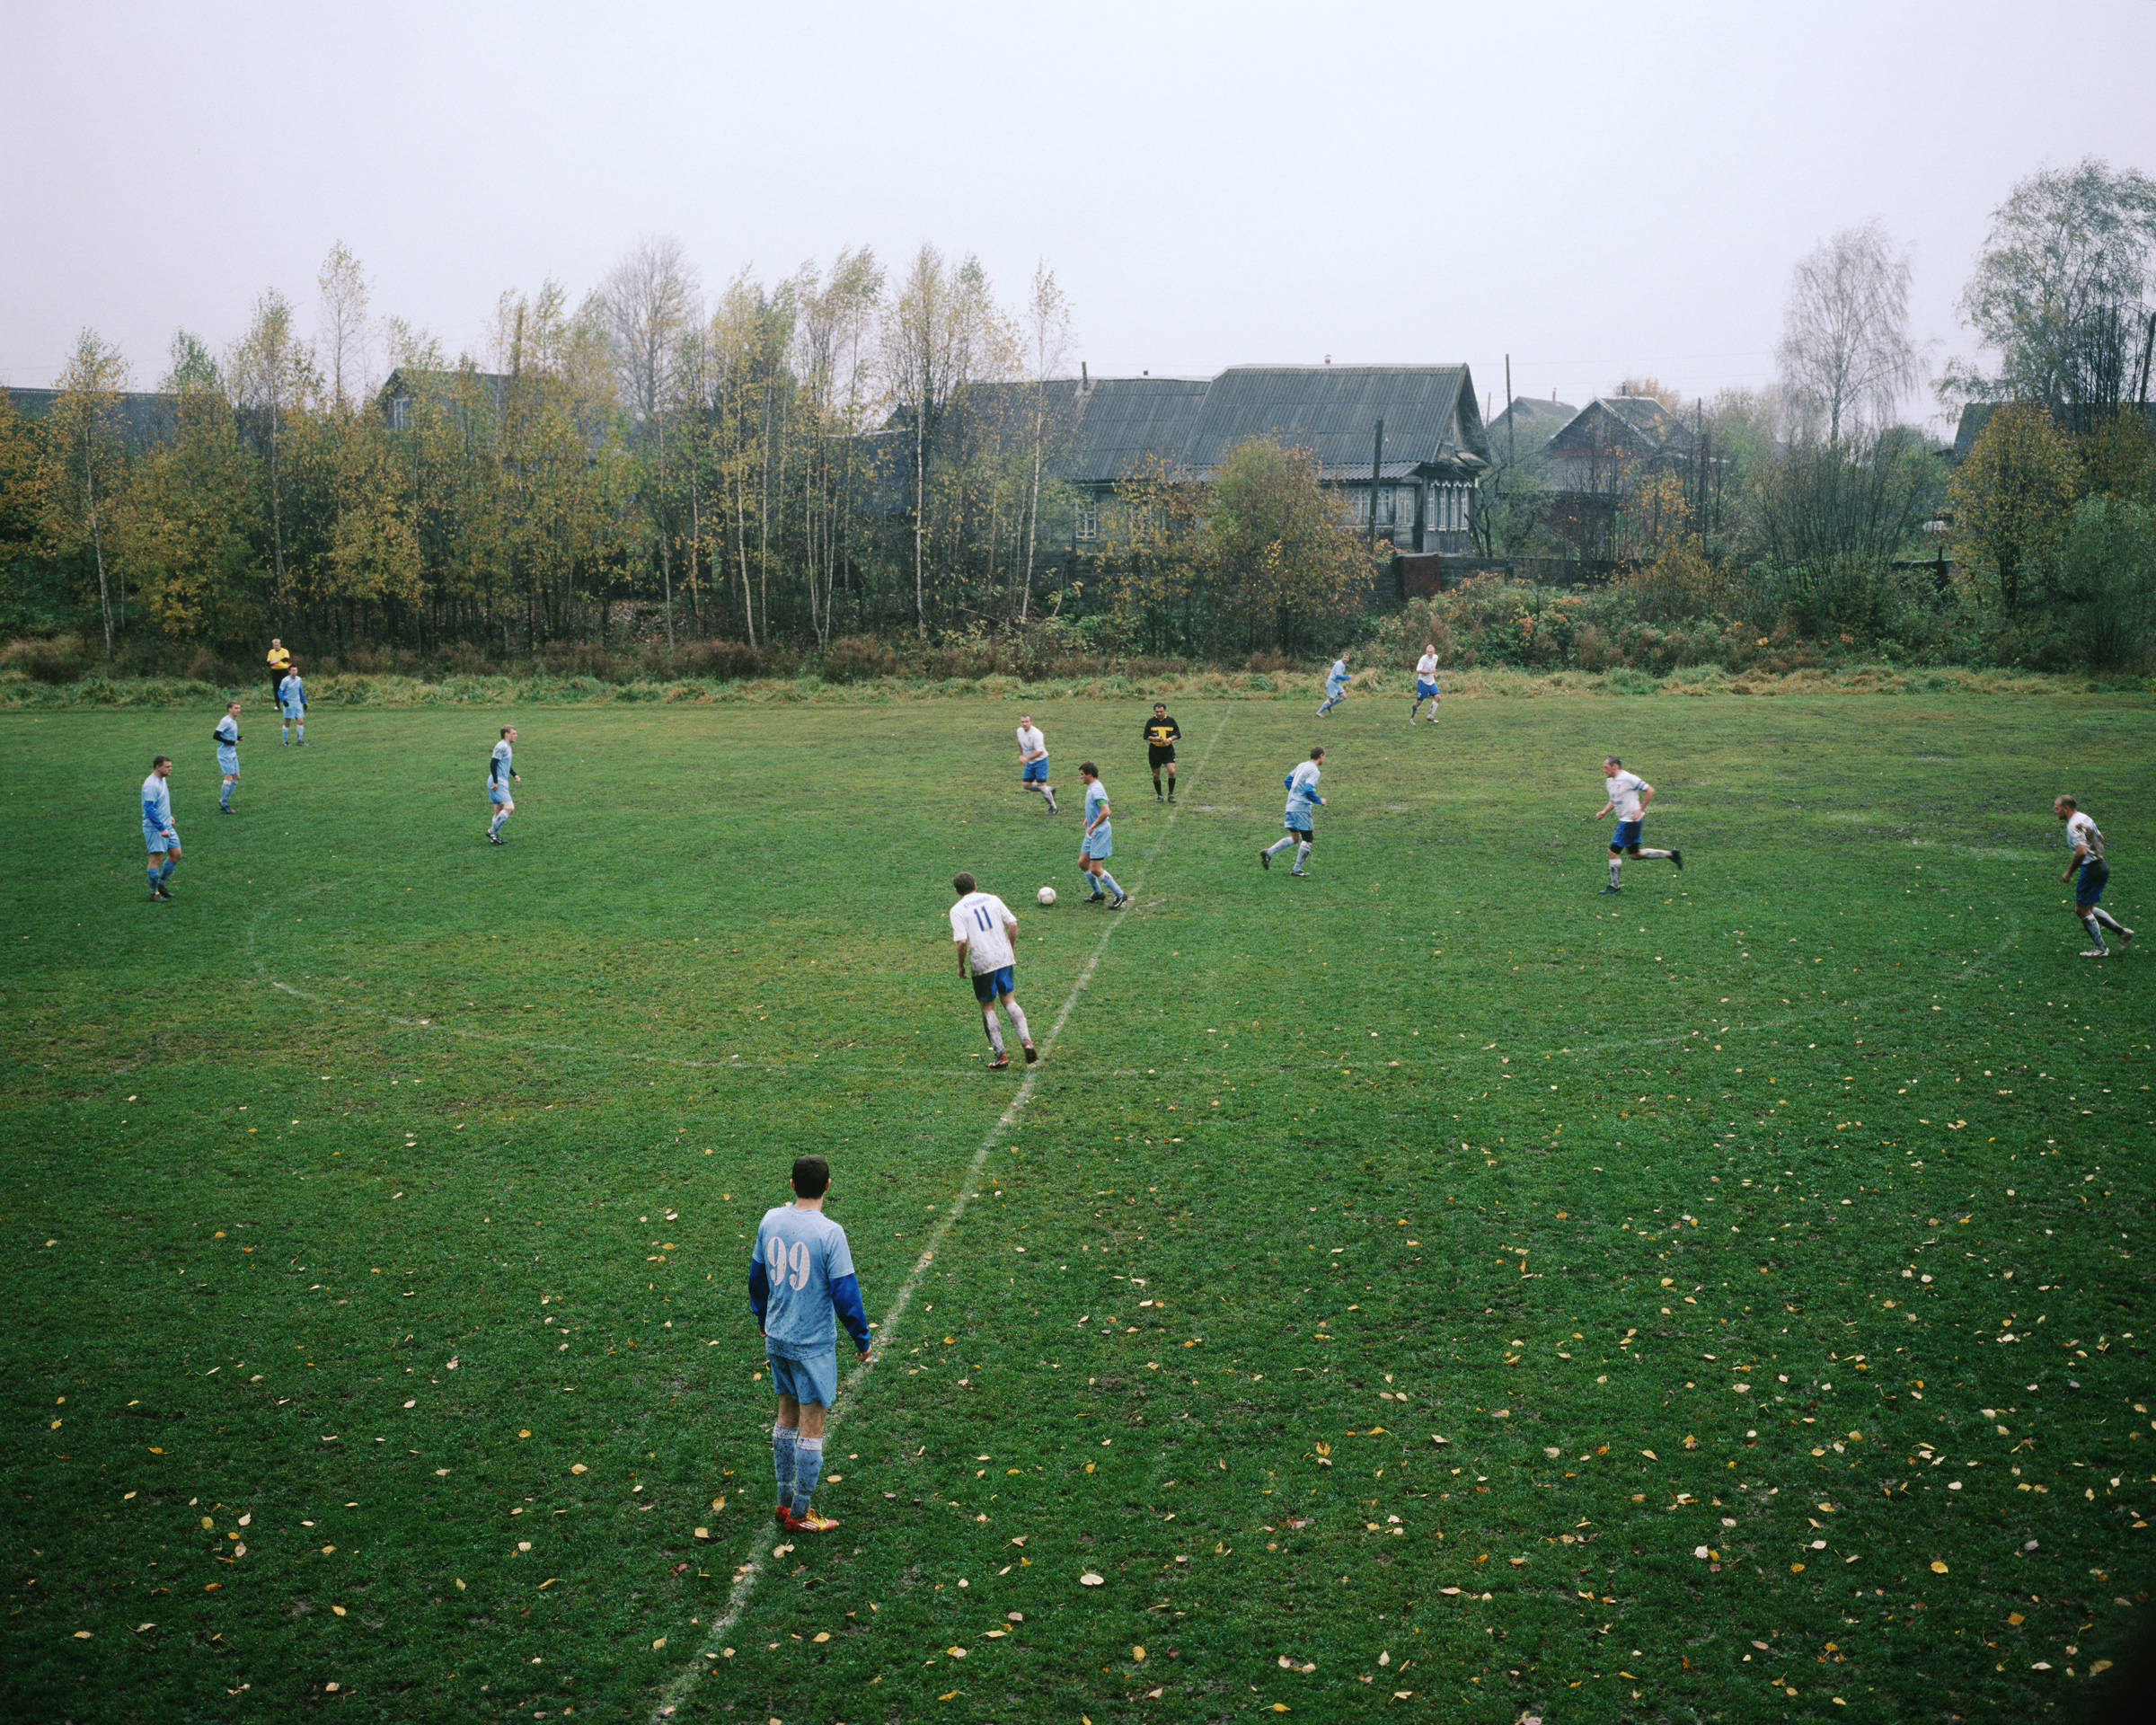 В России функционирует 2 245 детско-юношеских футбольных школ, в которых занимаются около 415 тыс. детей до 17-летнего возраста. Это значительно меньше, чем в европейских странах. В Англии футбольные секции посещают 3,35 млн детей до 15 лет (в том числе 860 тыс. девочек). В Германии в футбольных школах занимаются более 1,5 млн детей.